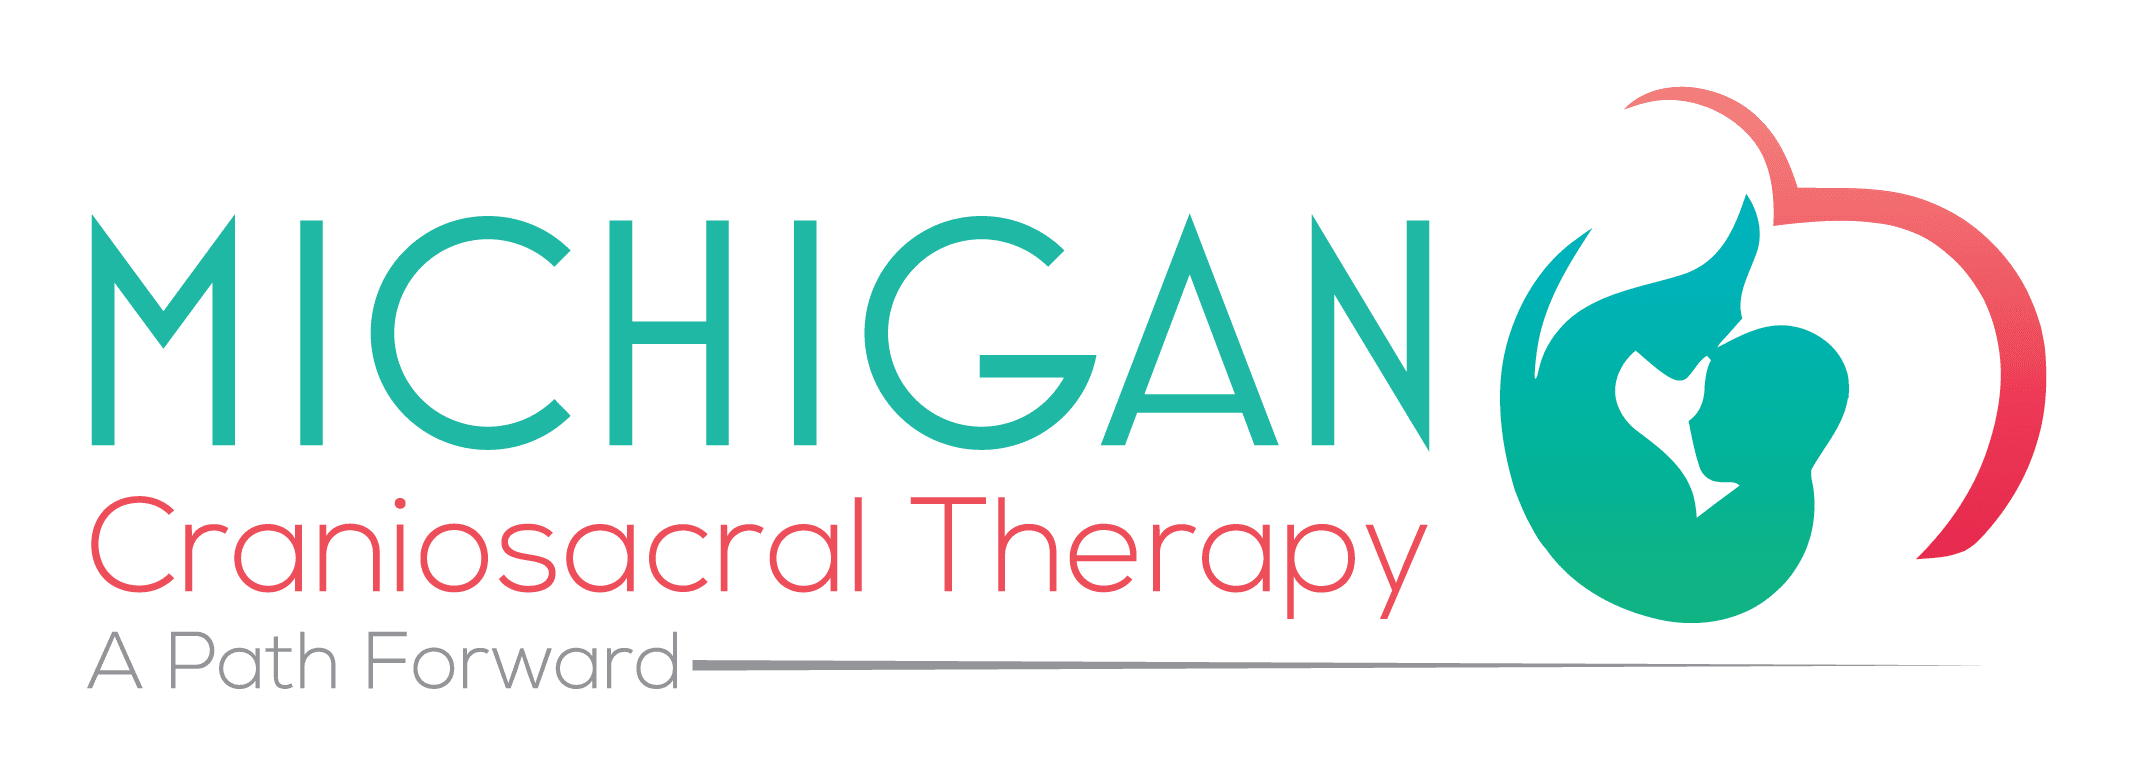 Resources - Michigan Craniosacral Therapy in Farmington Hills, MI